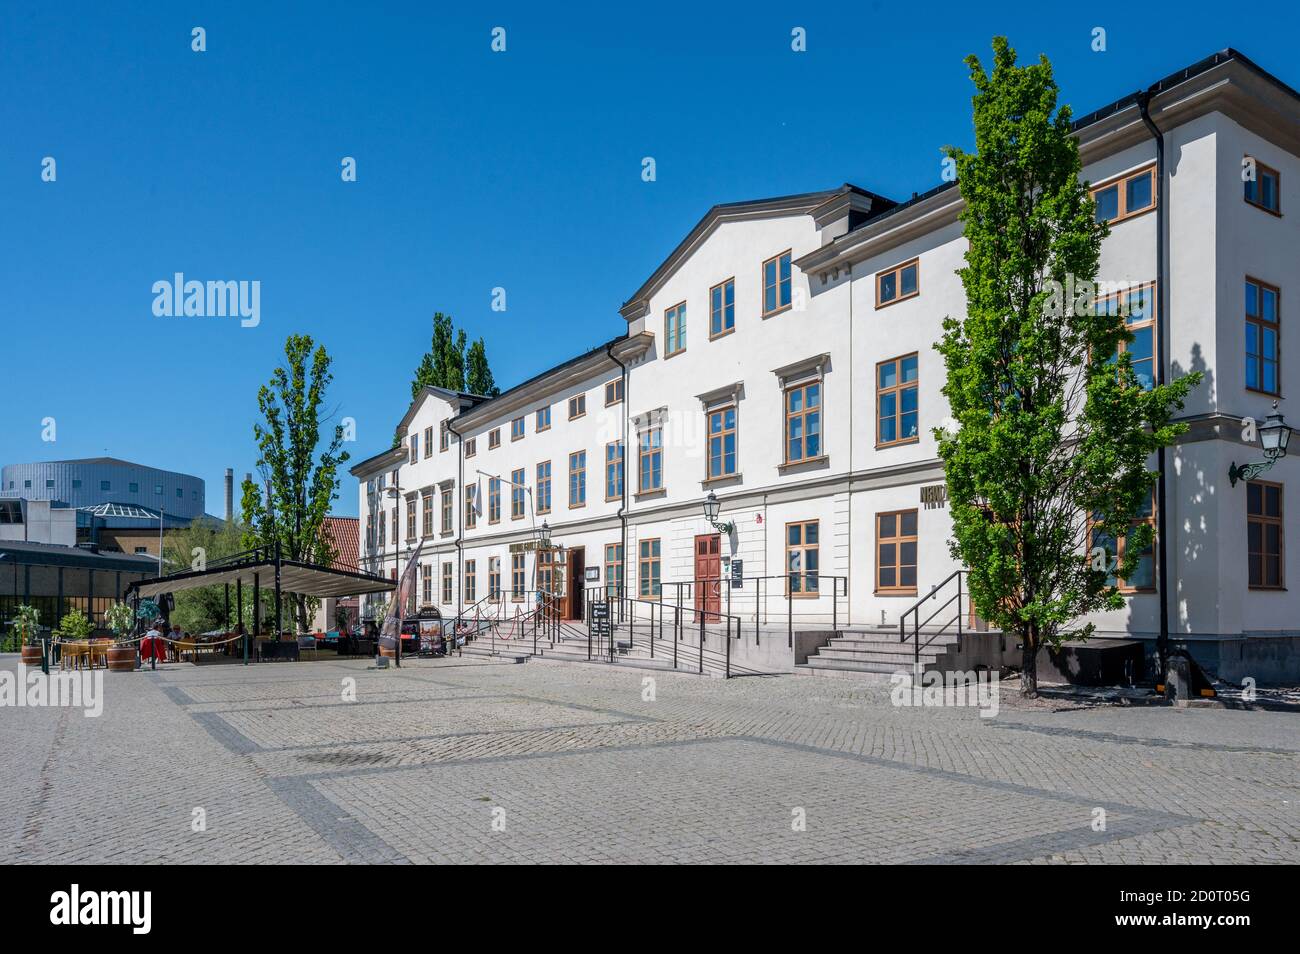 Anciens bâtiments de la place Old Square à Norrkoping. Norrkoping est une ville industrielle historique de Suède. Banque D'Images